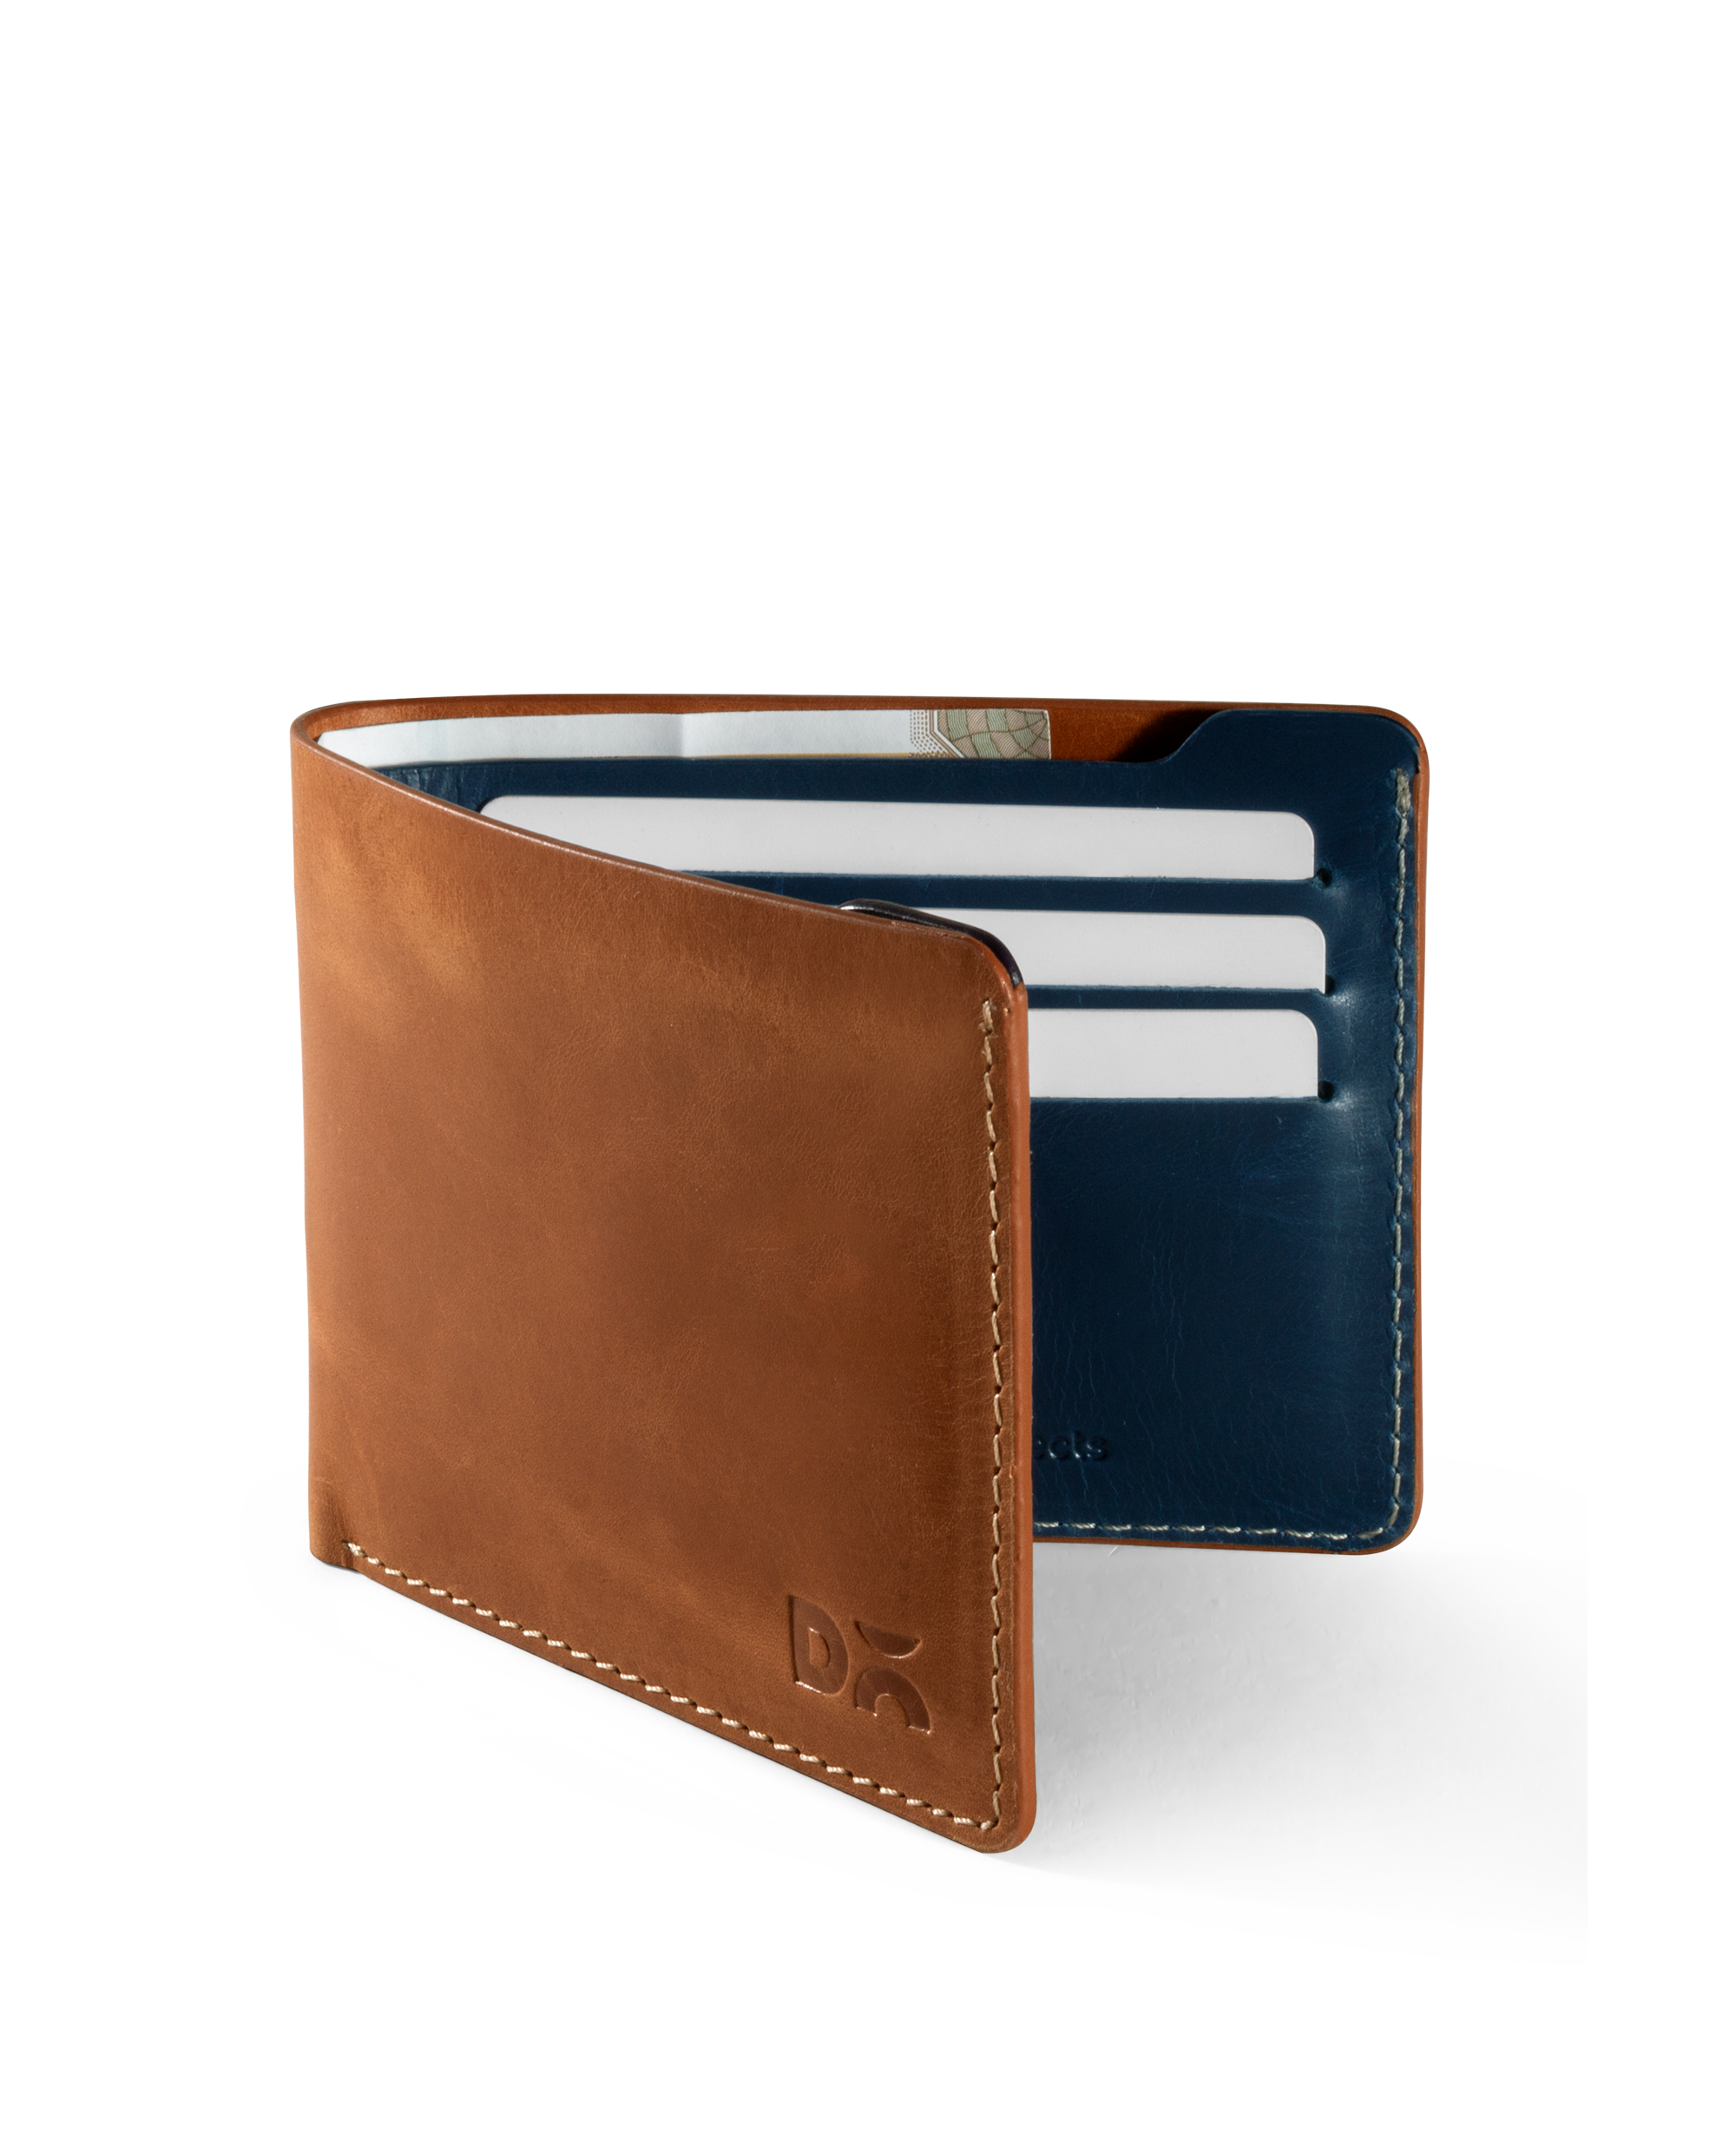 Handmade Genuine Veg Tanned Leather Bifold Wallet for Men Classic Design -  Black